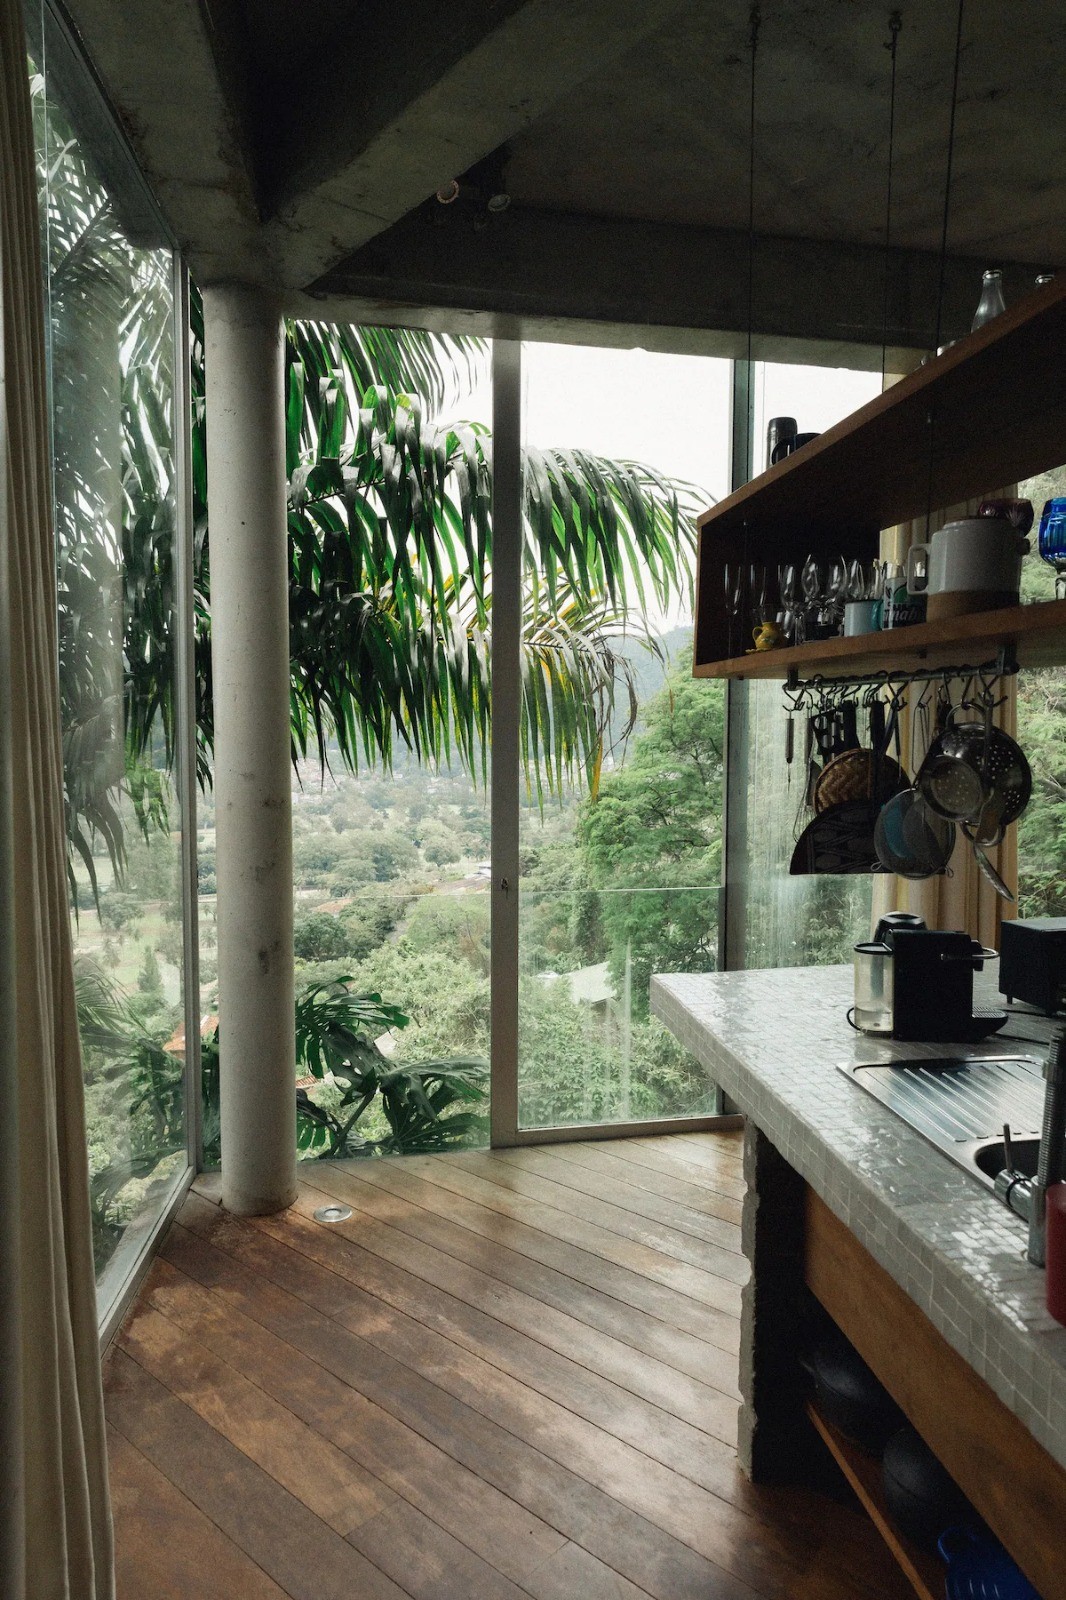 Outro ângulo da cozinha — Foto: Reprodução/Airbnb